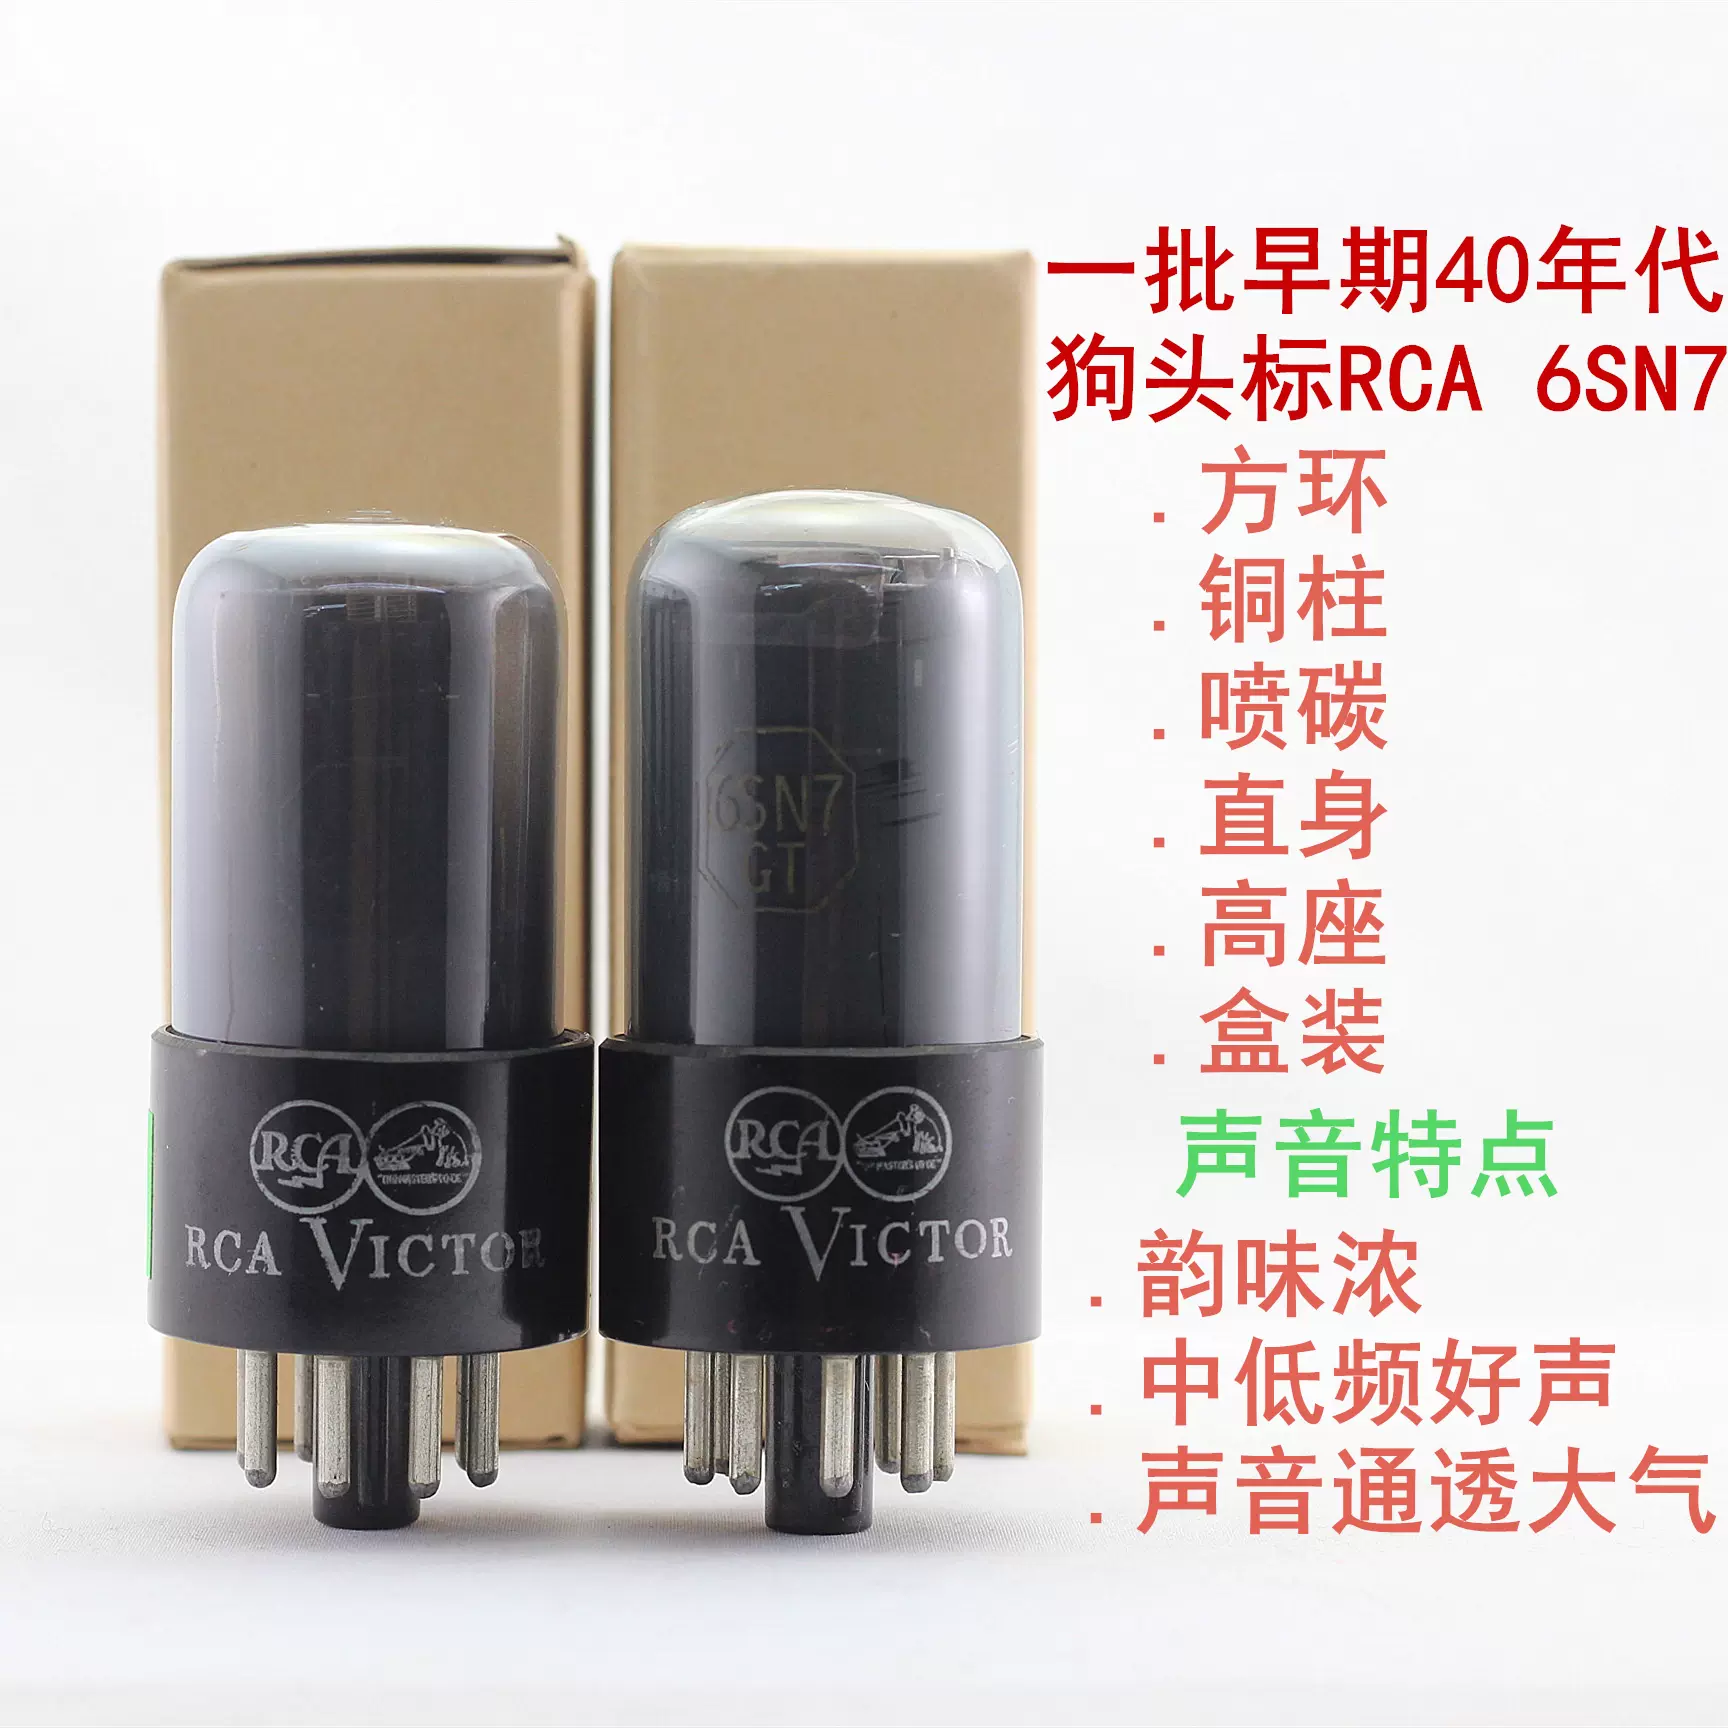 一批全新美国RCA狗头标6SN7/6N8P/5692带方环喷碳6sn7电子管-Taobao